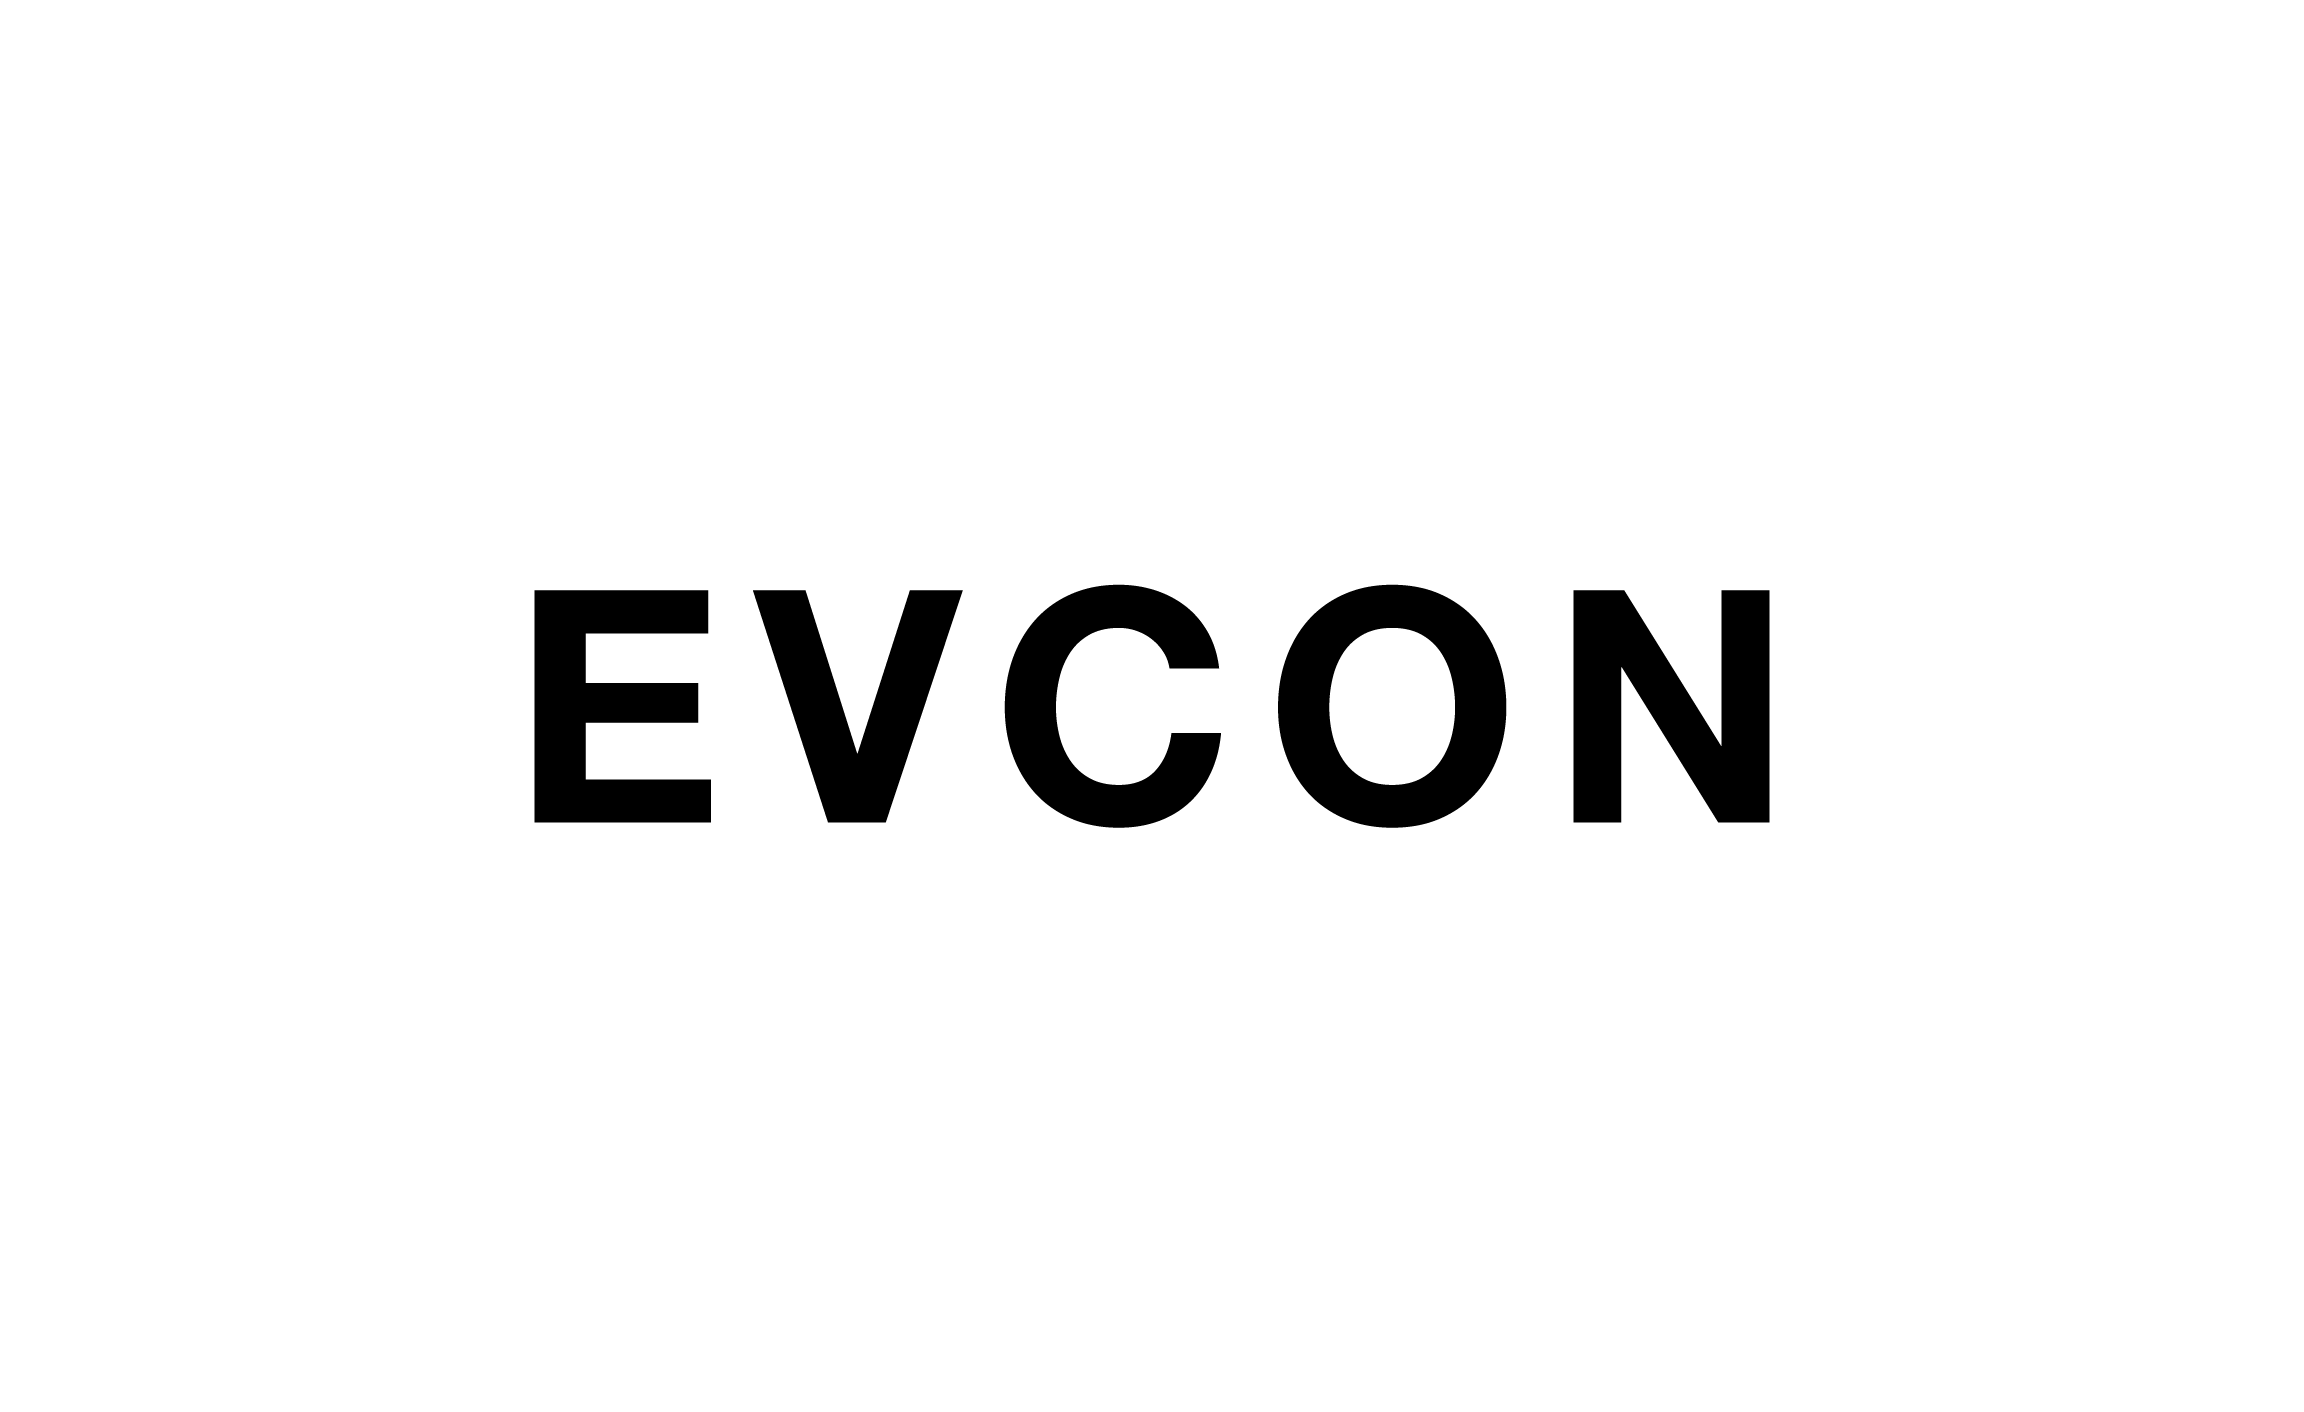 EVCON